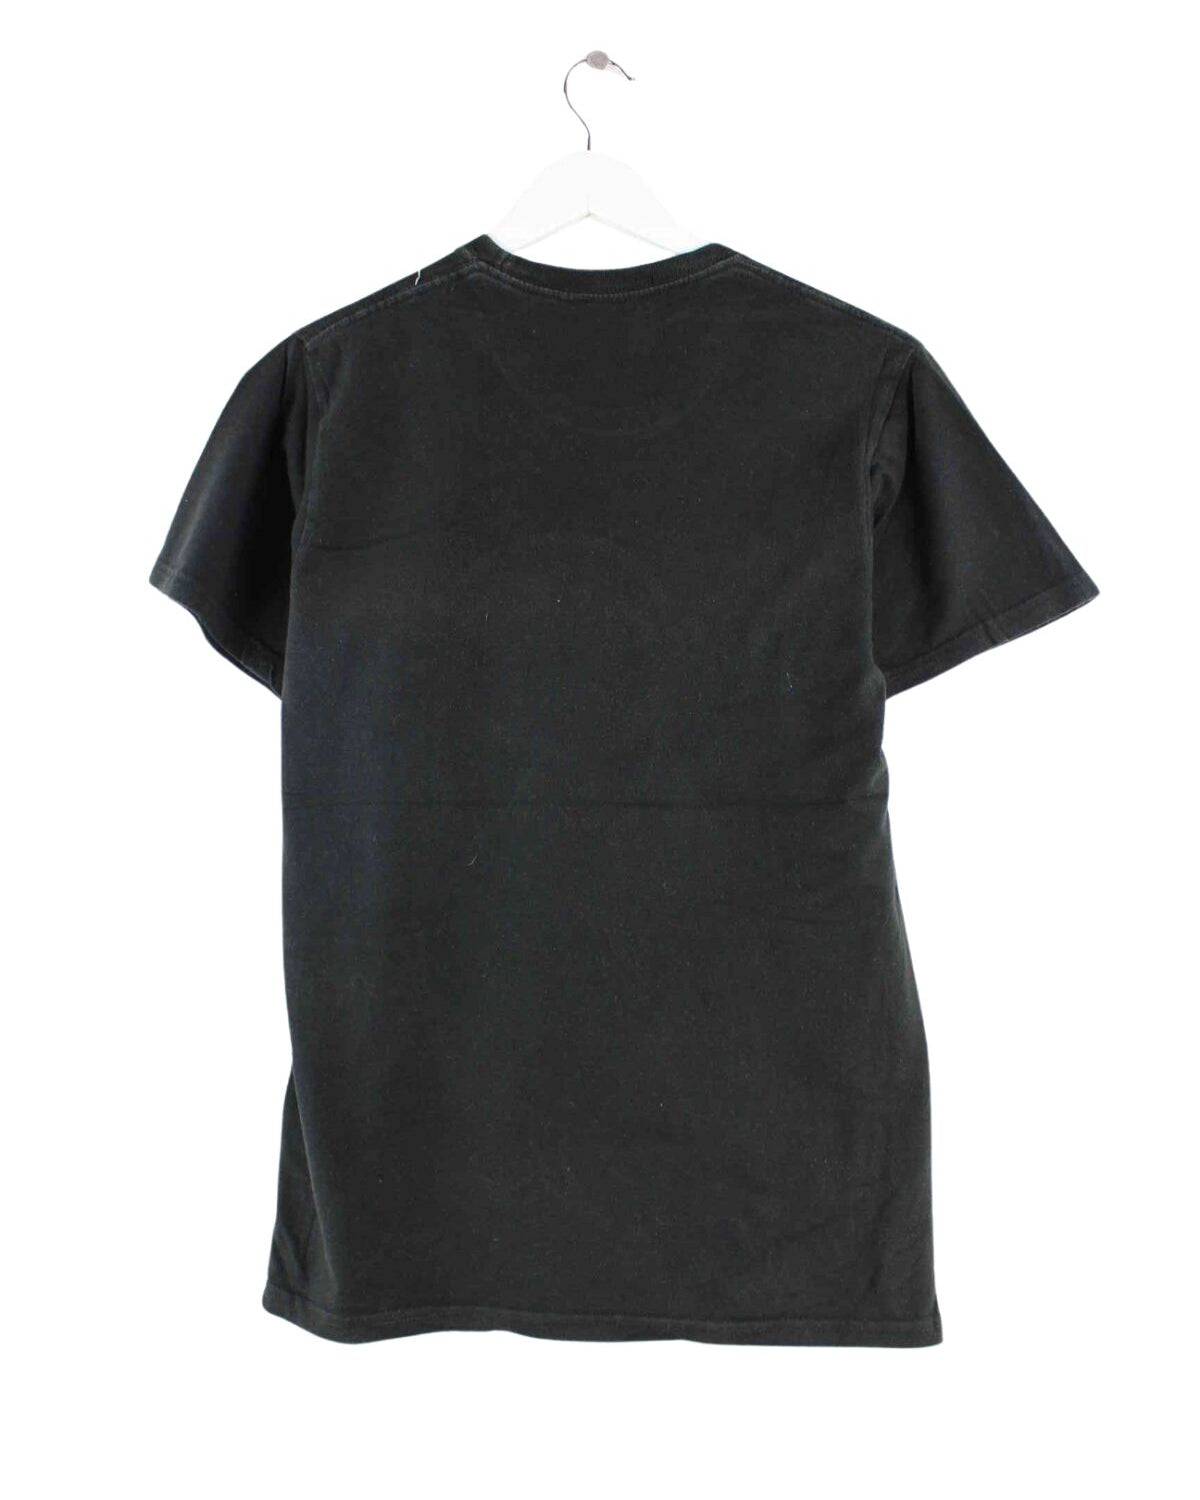 Hard Rock Cafe Barcelona Print T-Shirt Schwarz S (back image)